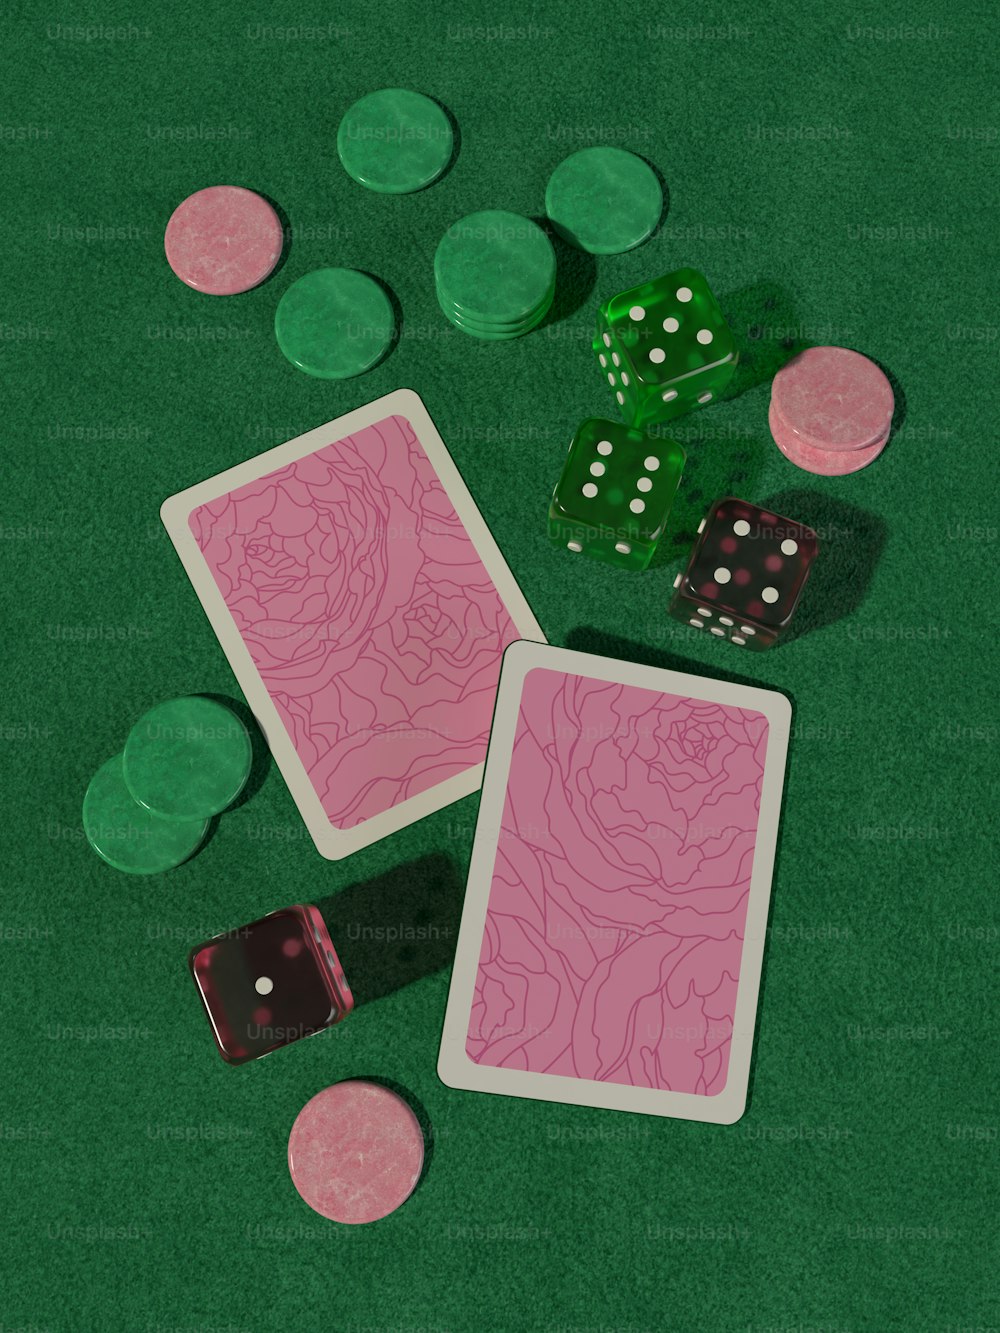 Zwei Spielkarten und zwei Würfel auf einem grünen Tisch